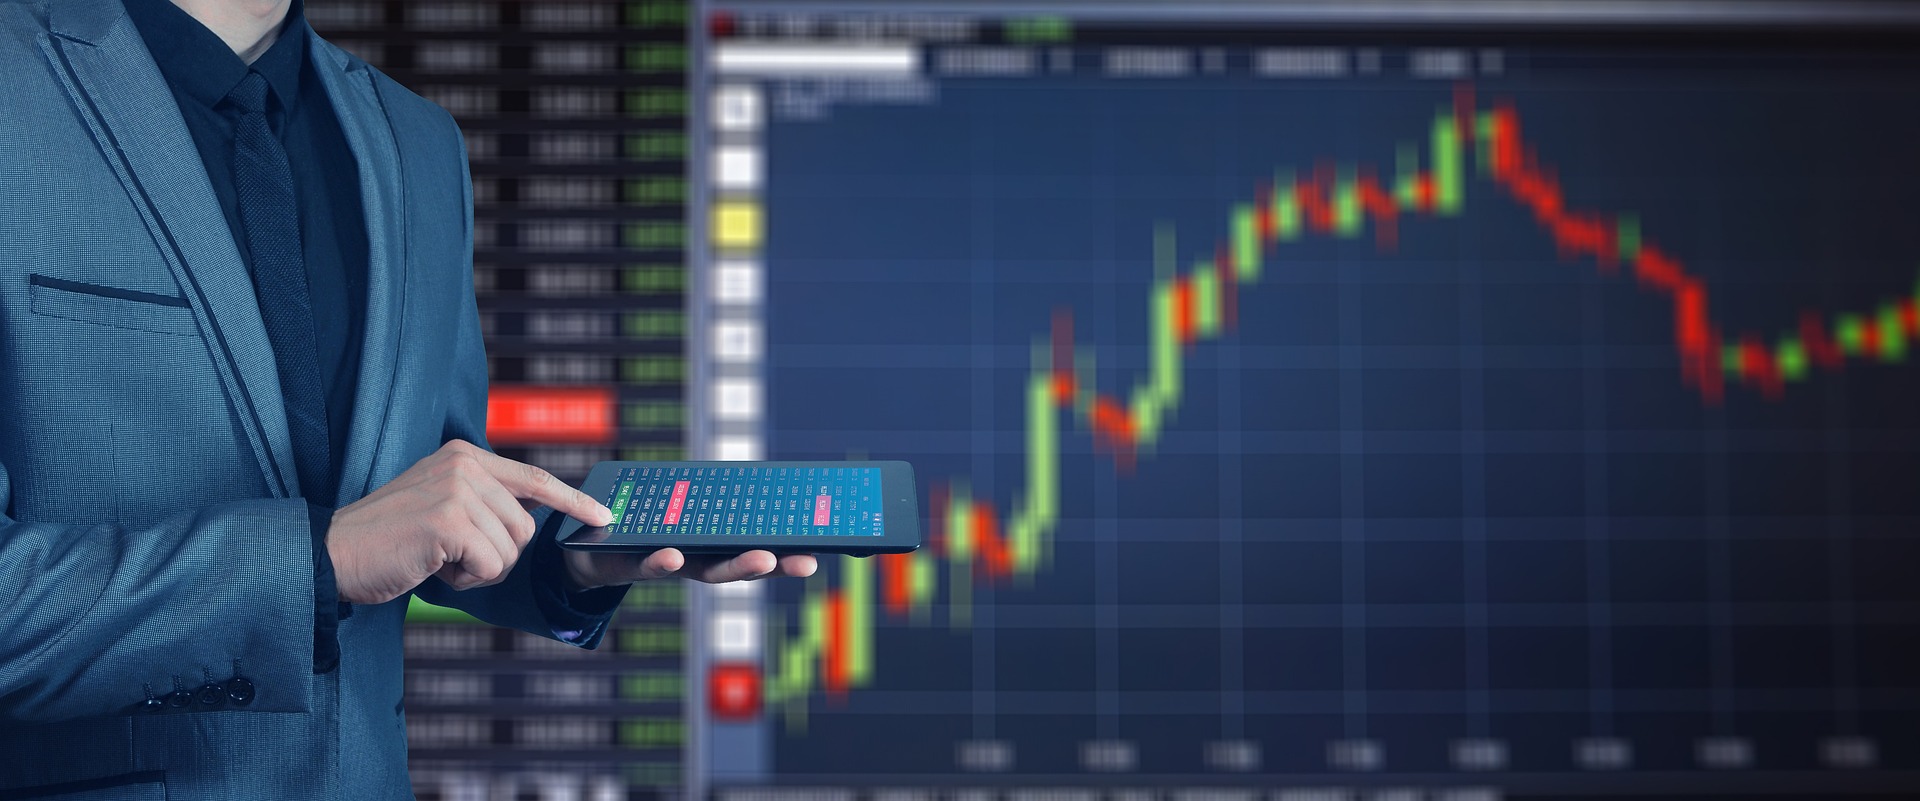 Person steht mit Tablet vor einem grossen Screen mit Börsenverlauf